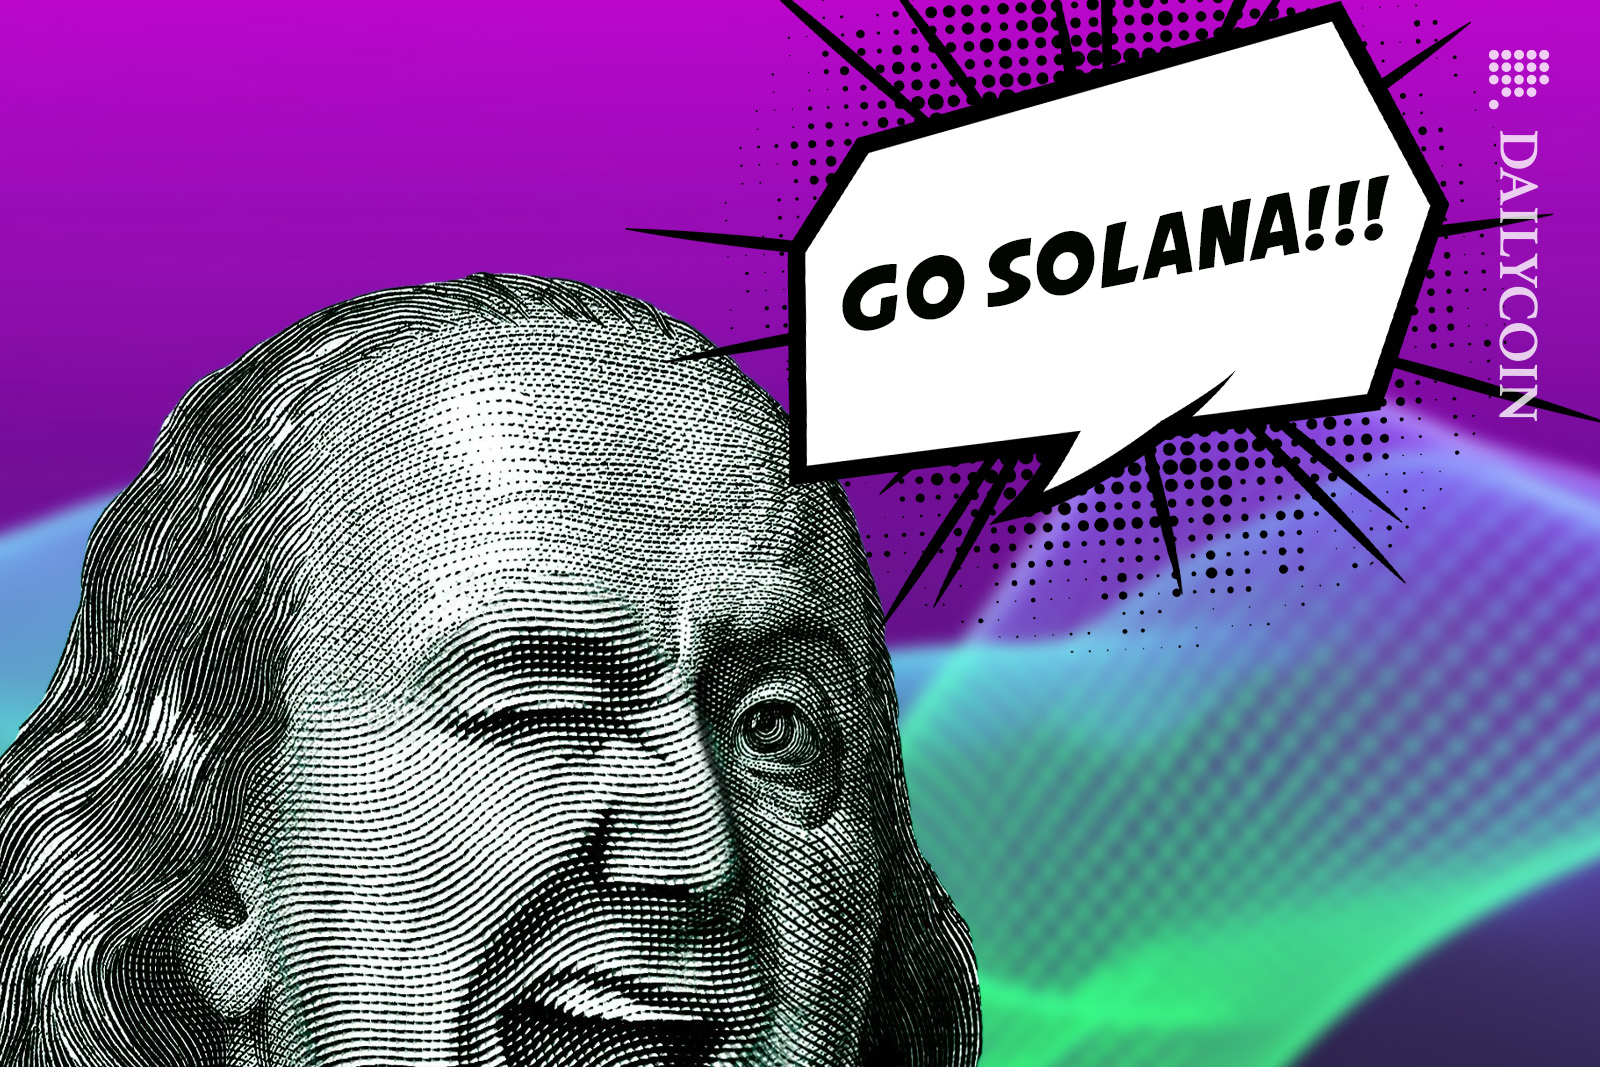 Benjamin Franklin supporting Solana.